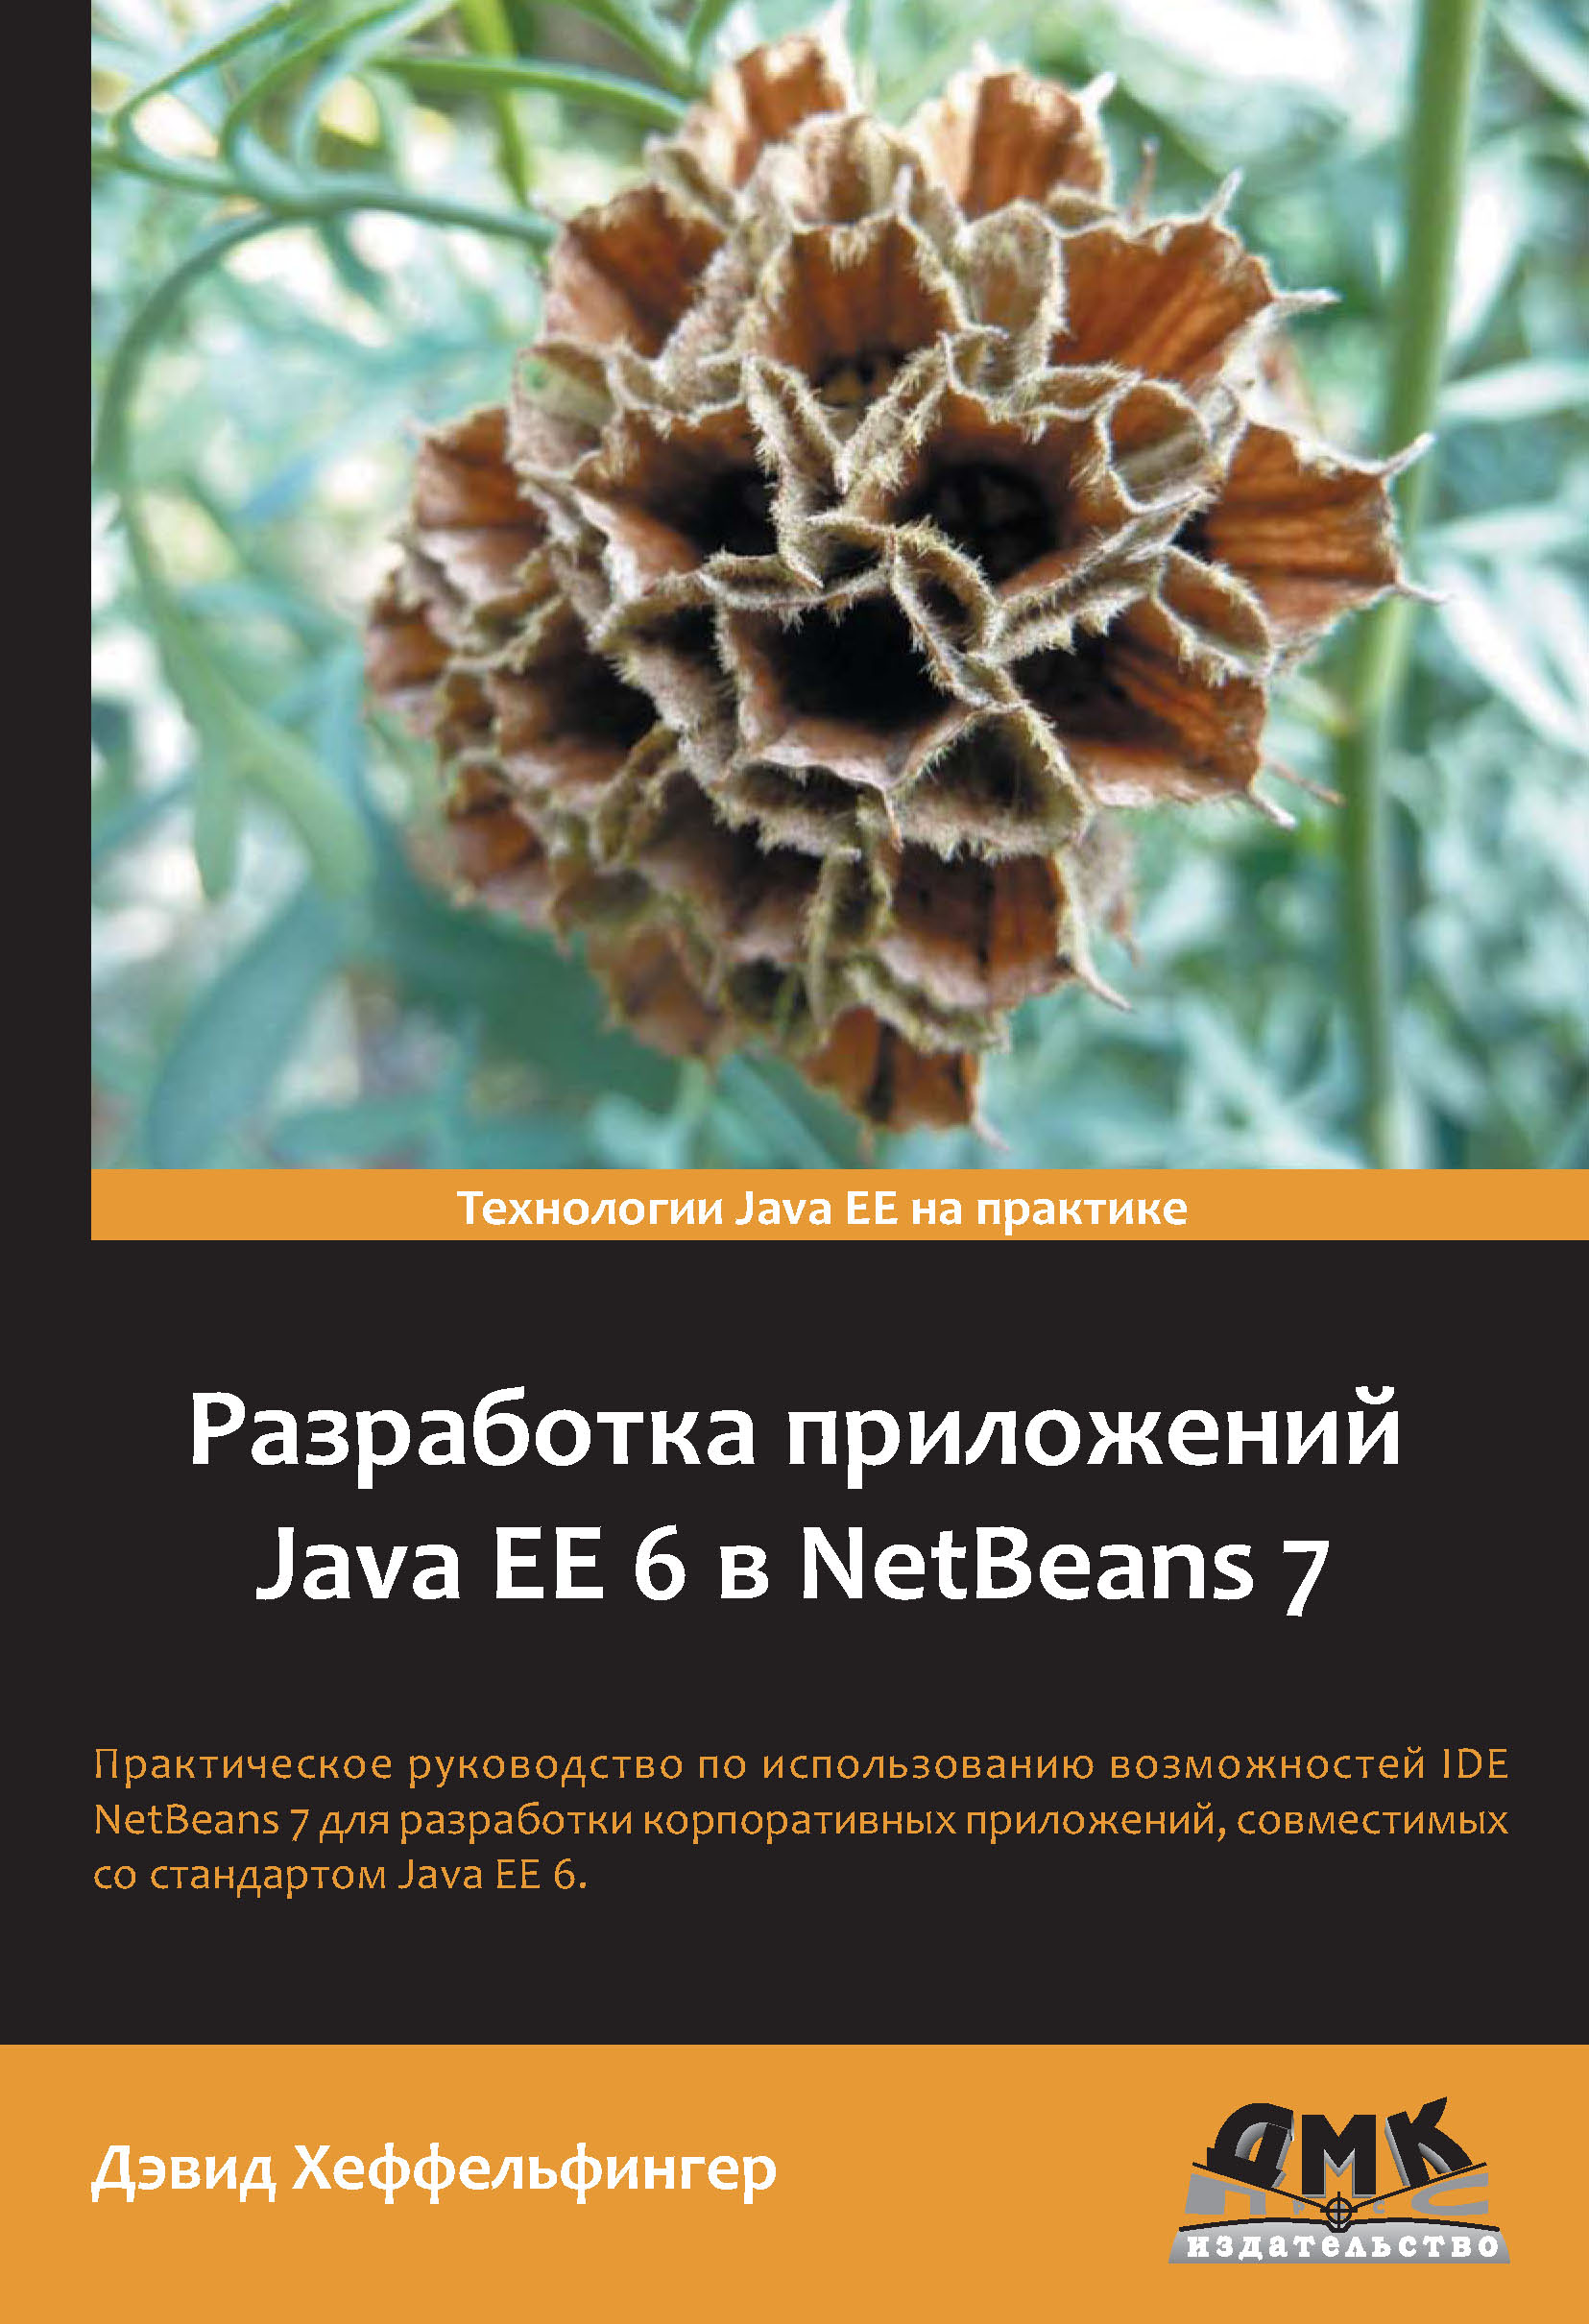 Книга  Разработка приложений Java EE 6 в NetBeans 7 созданная Дэвид Хеффельфингер, Е. Н. Карышев может относится к жанру зарубежная компьютерная литература, программирование. Стоимость электронной книги Разработка приложений Java EE 6 в NetBeans 7 с идентификатором 6089815 составляет 479.00 руб.